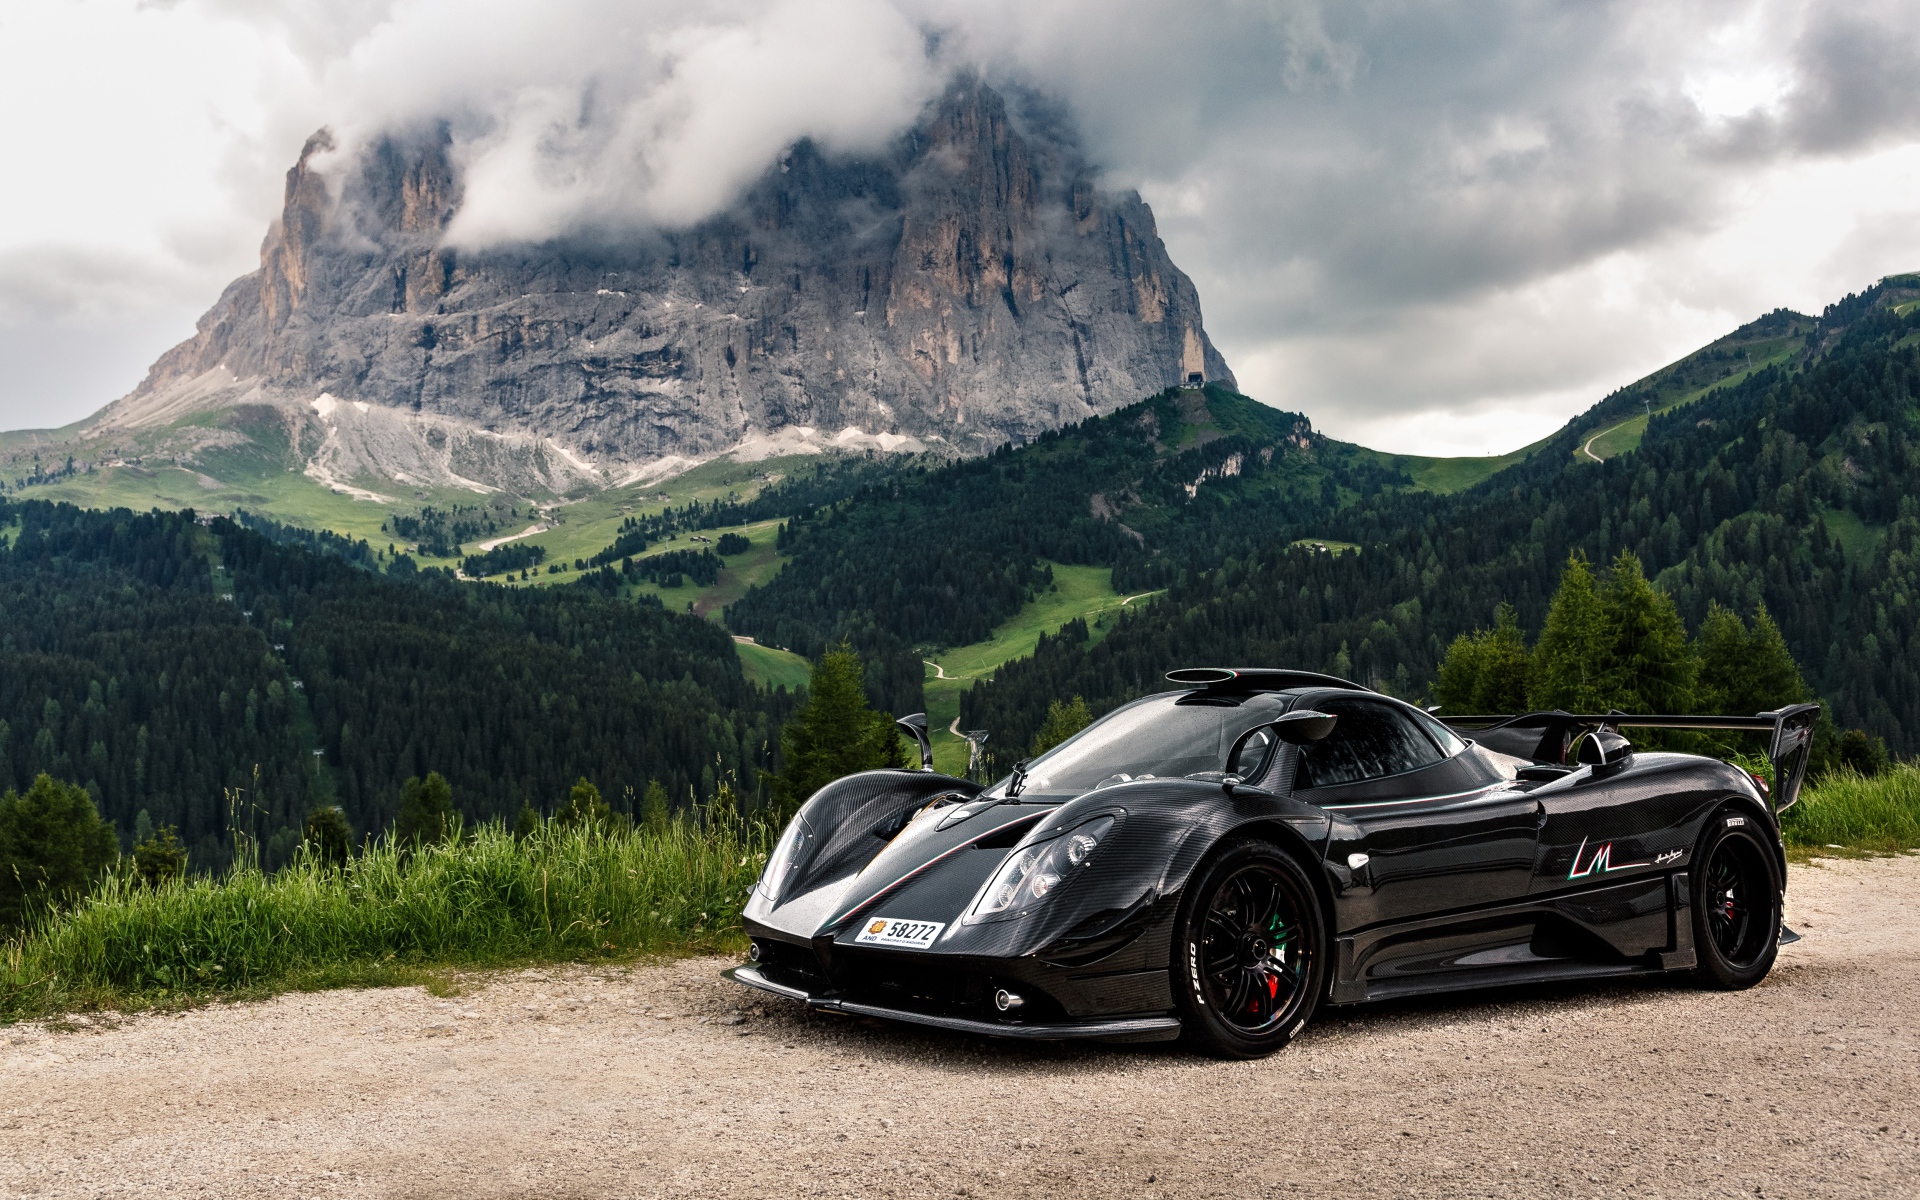 Черный спортивный автомобиль Pagani Zonda на фоне горы